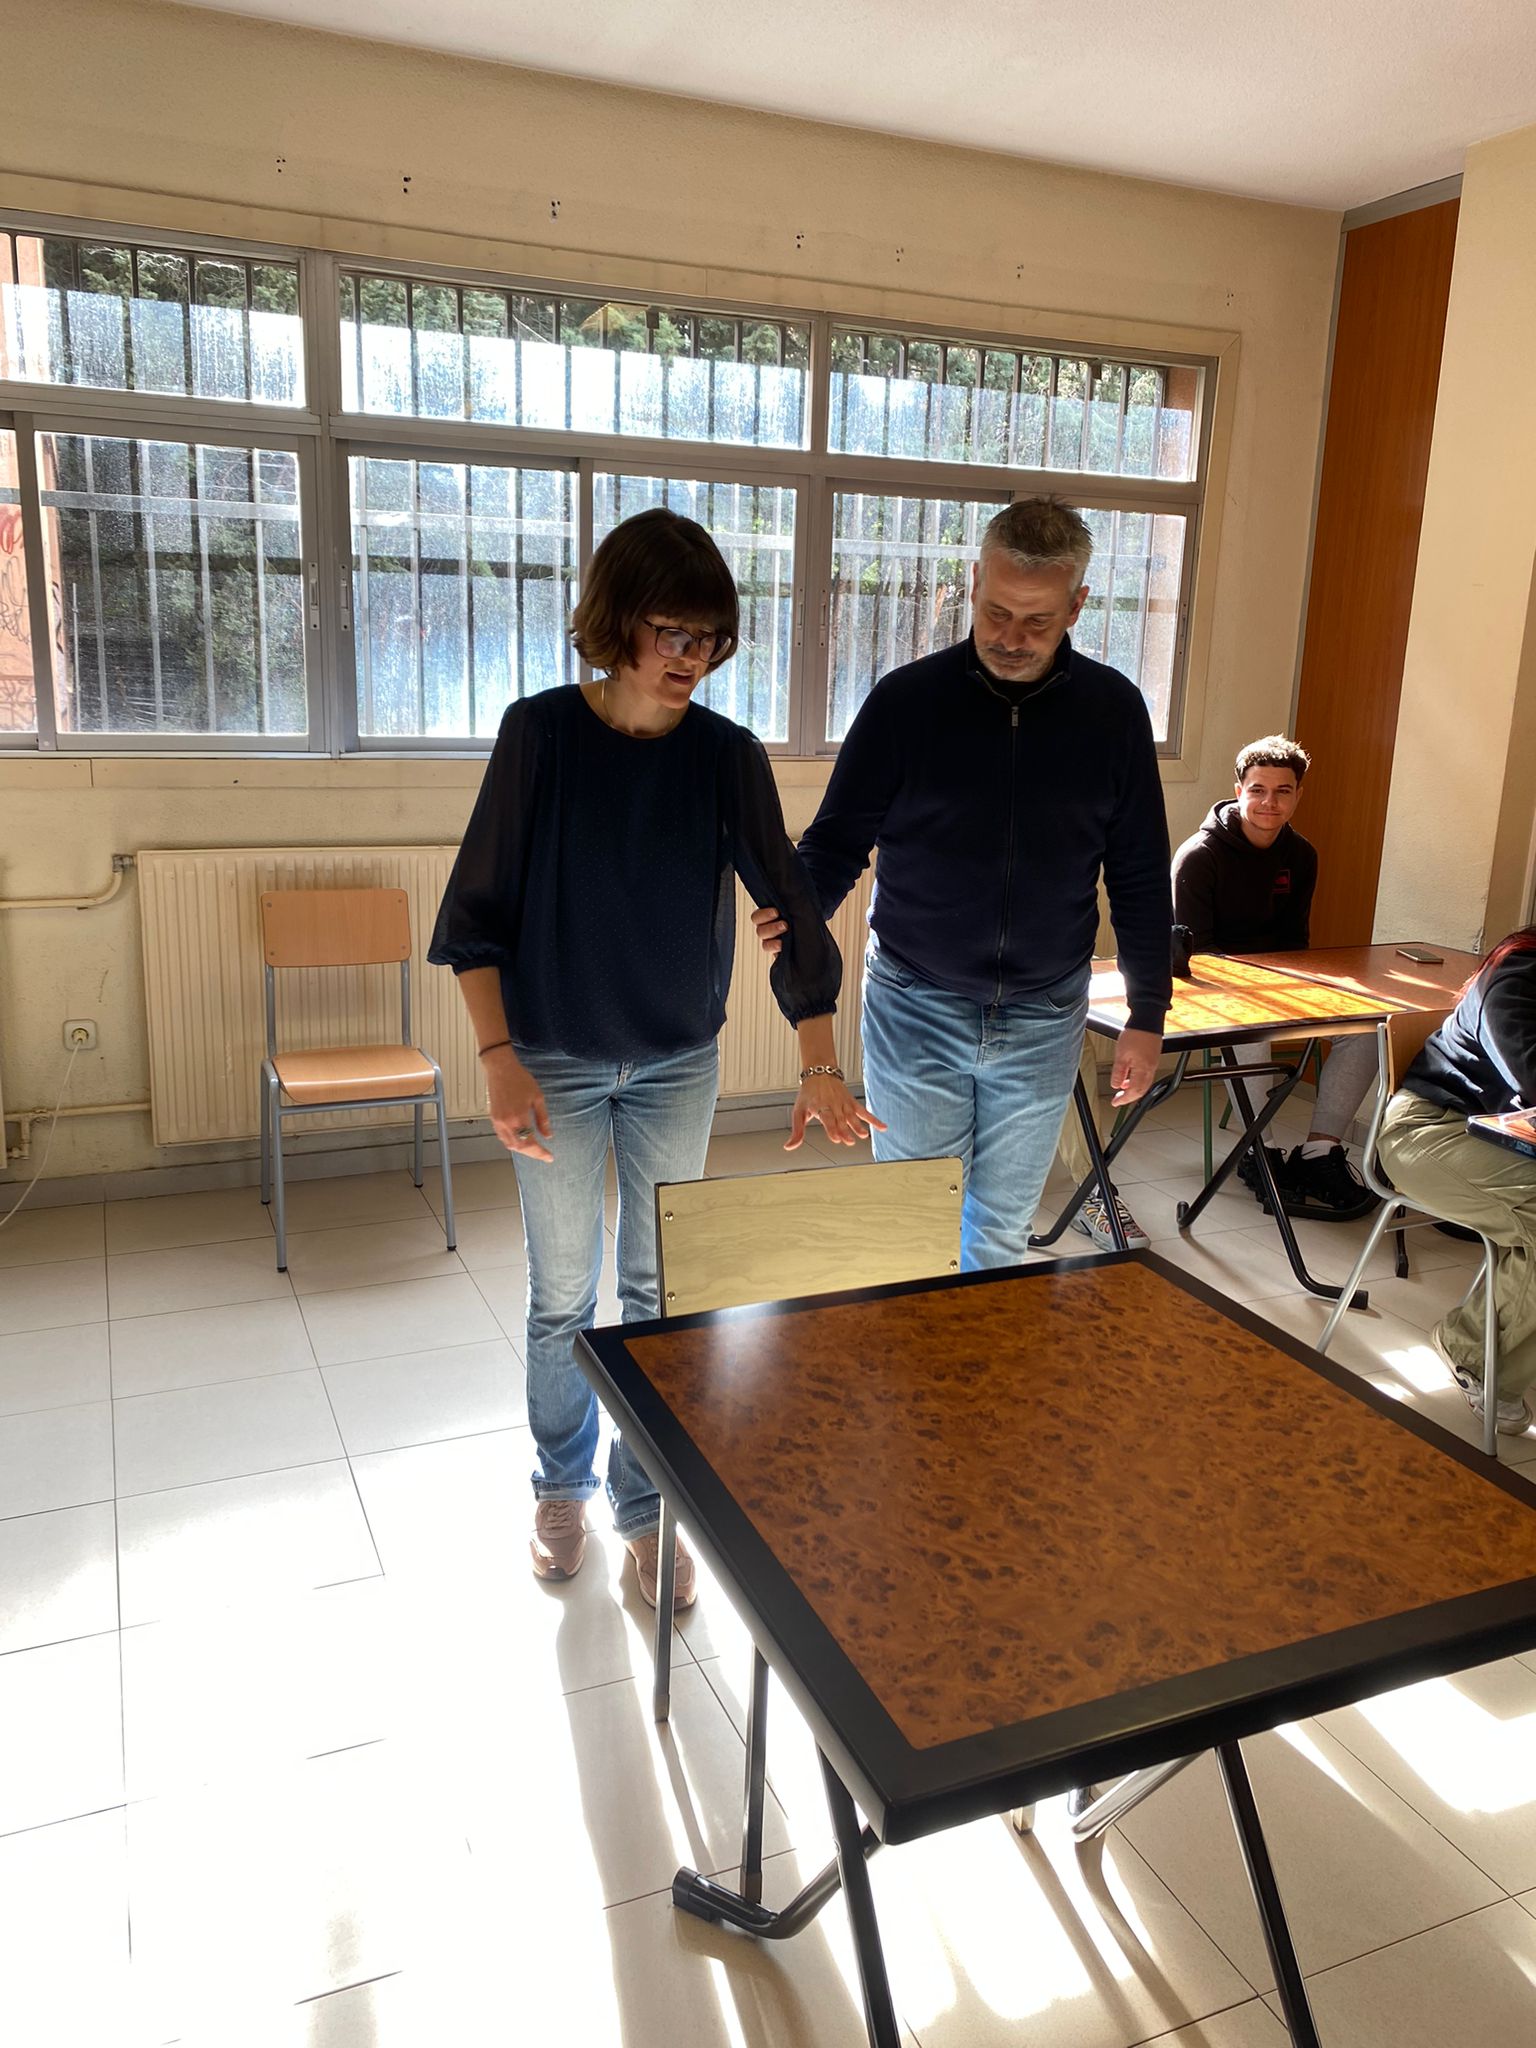 Elvira Asensio, técnica de rehabilitación de la ONCE, mostrando cómo guiar a una persona ciega para sentarse en la mesa